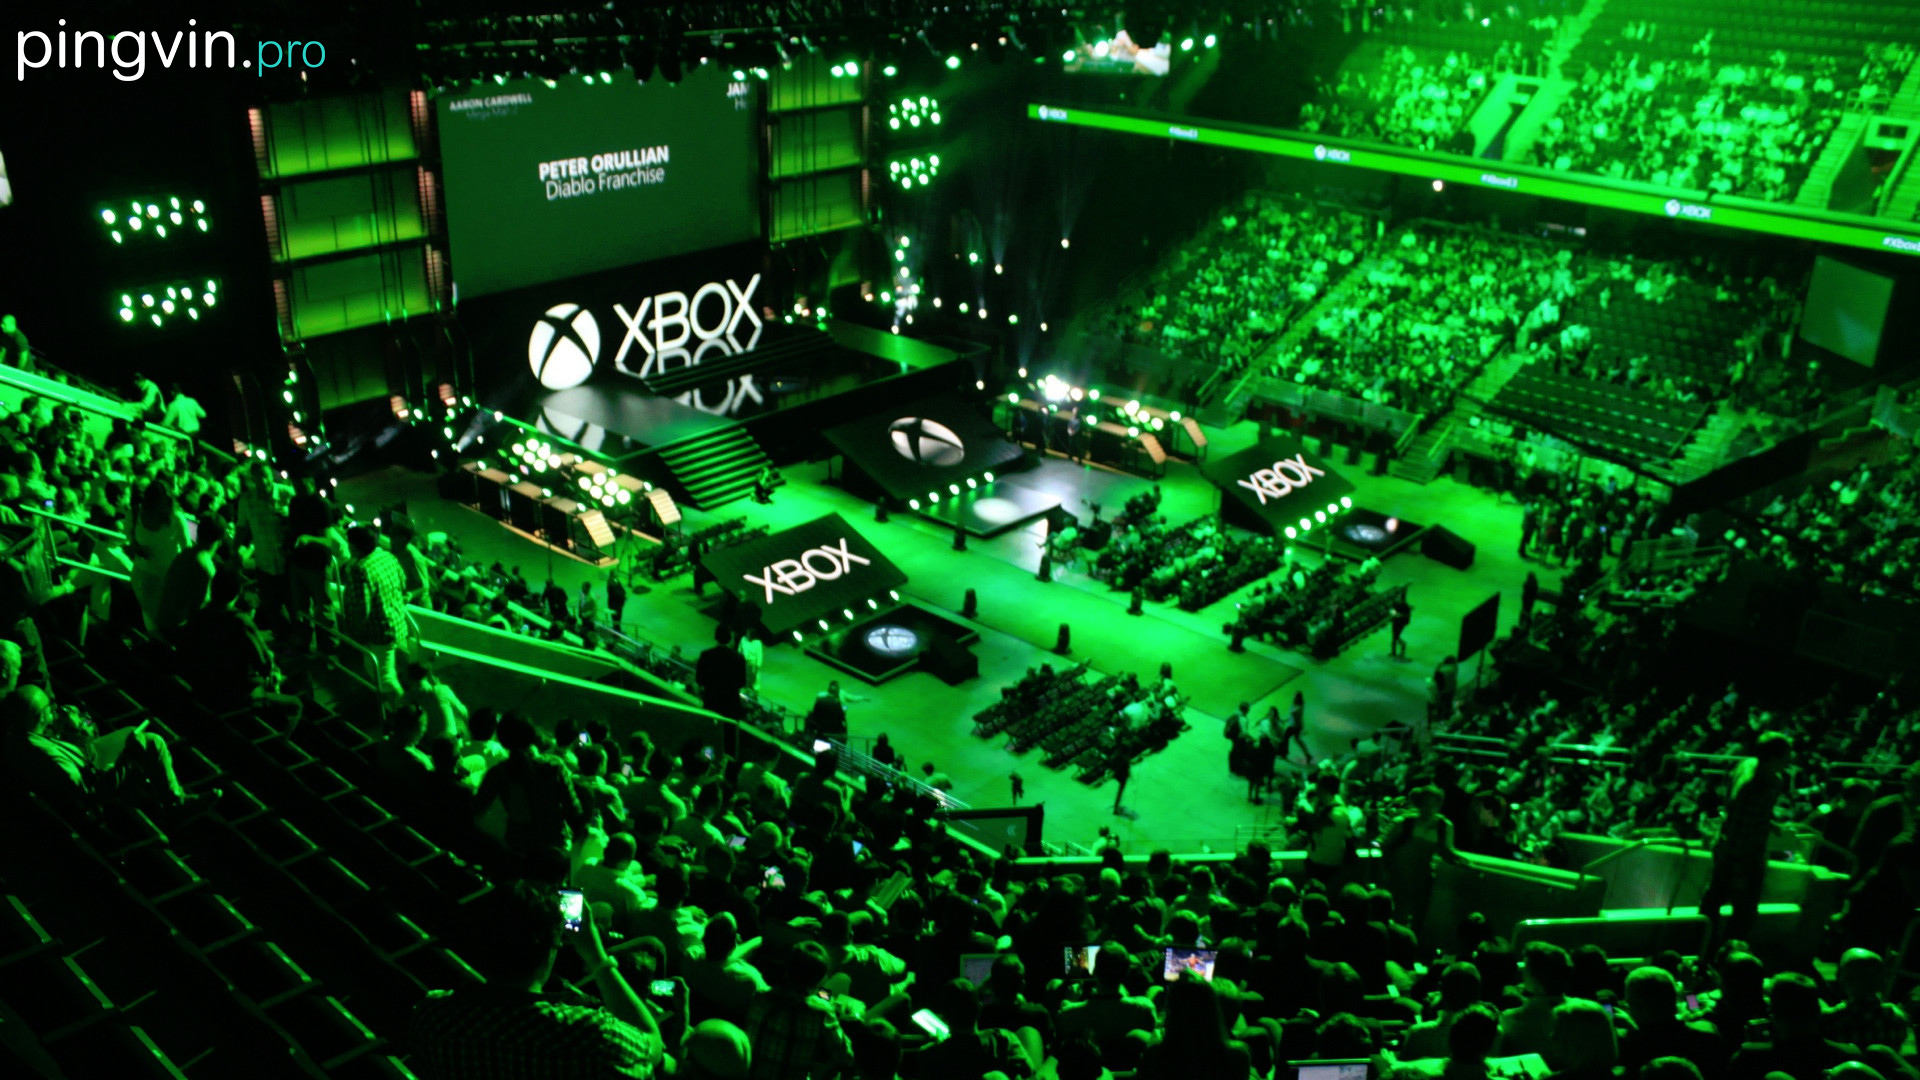 Microsoft E3 2016